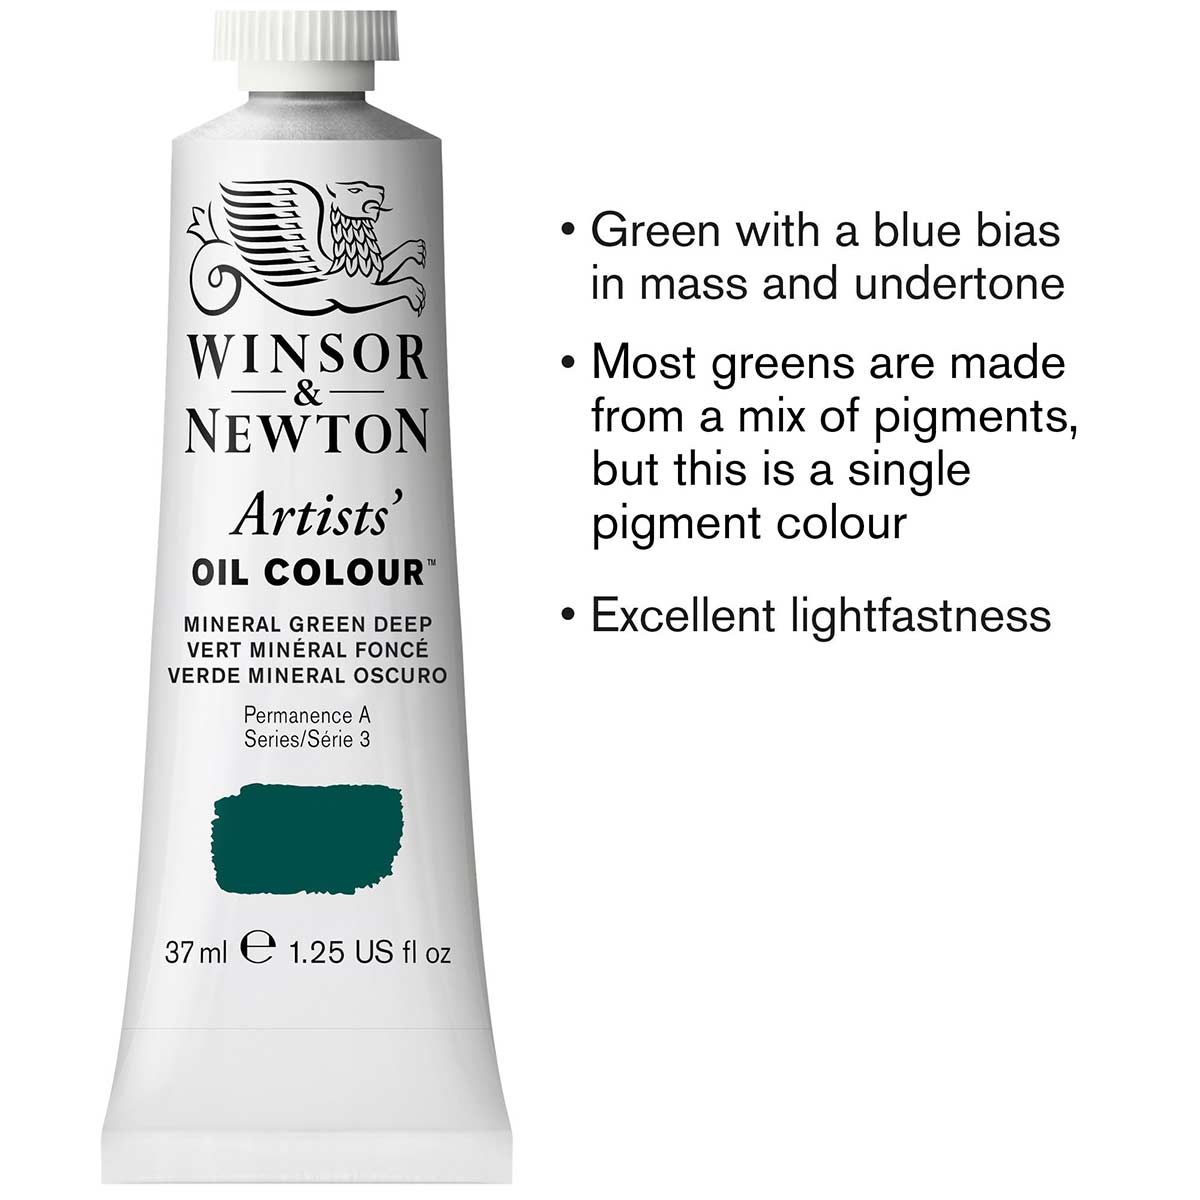 Winsor and Newton - Peinture à l’huile d’artiste - 37ml - Vert minéral foncé S3